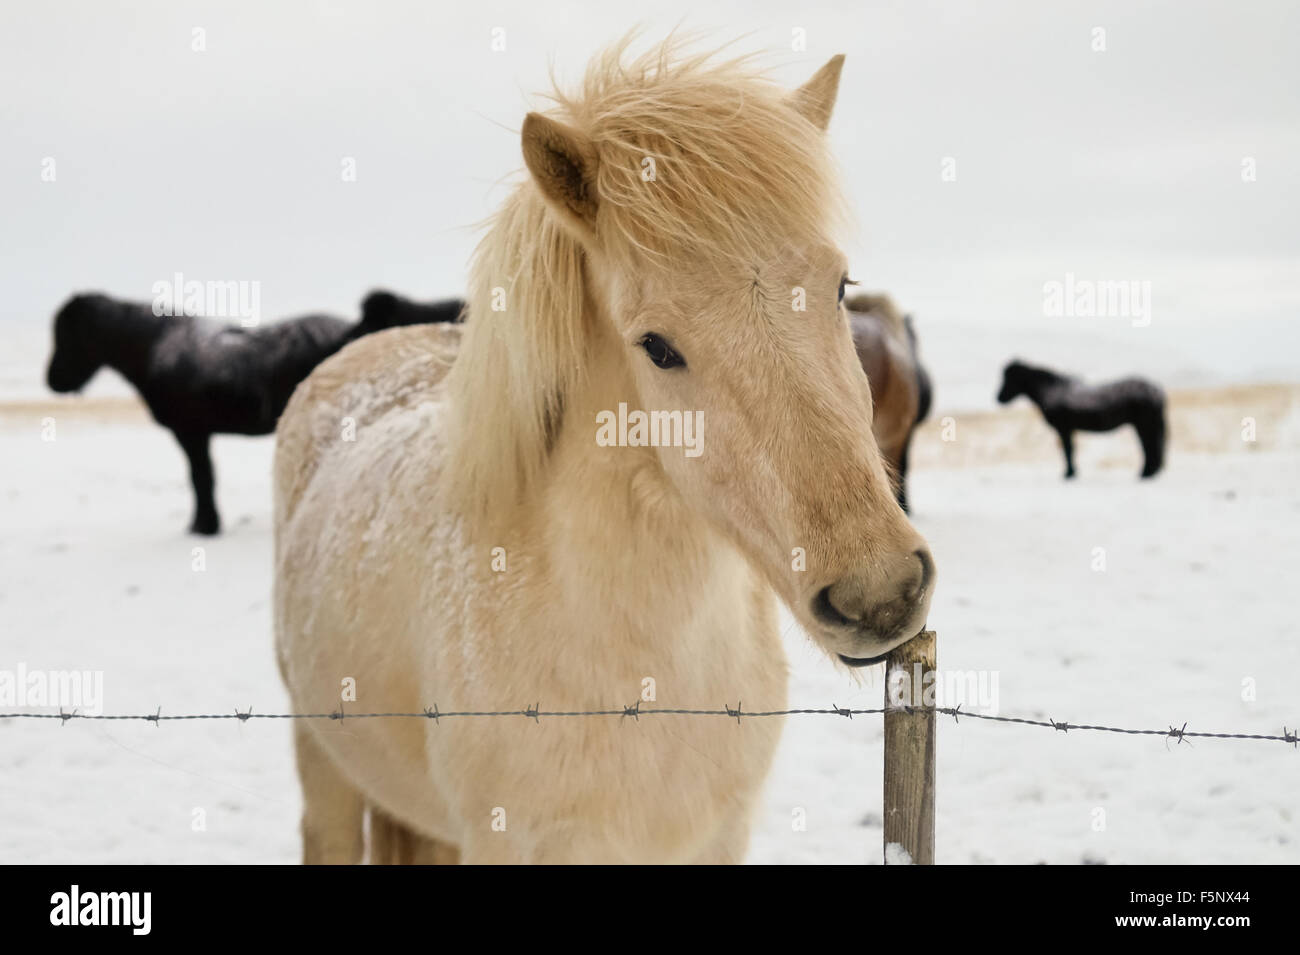 Cavallo islandese in difficili condizioni invernali Foto Stock